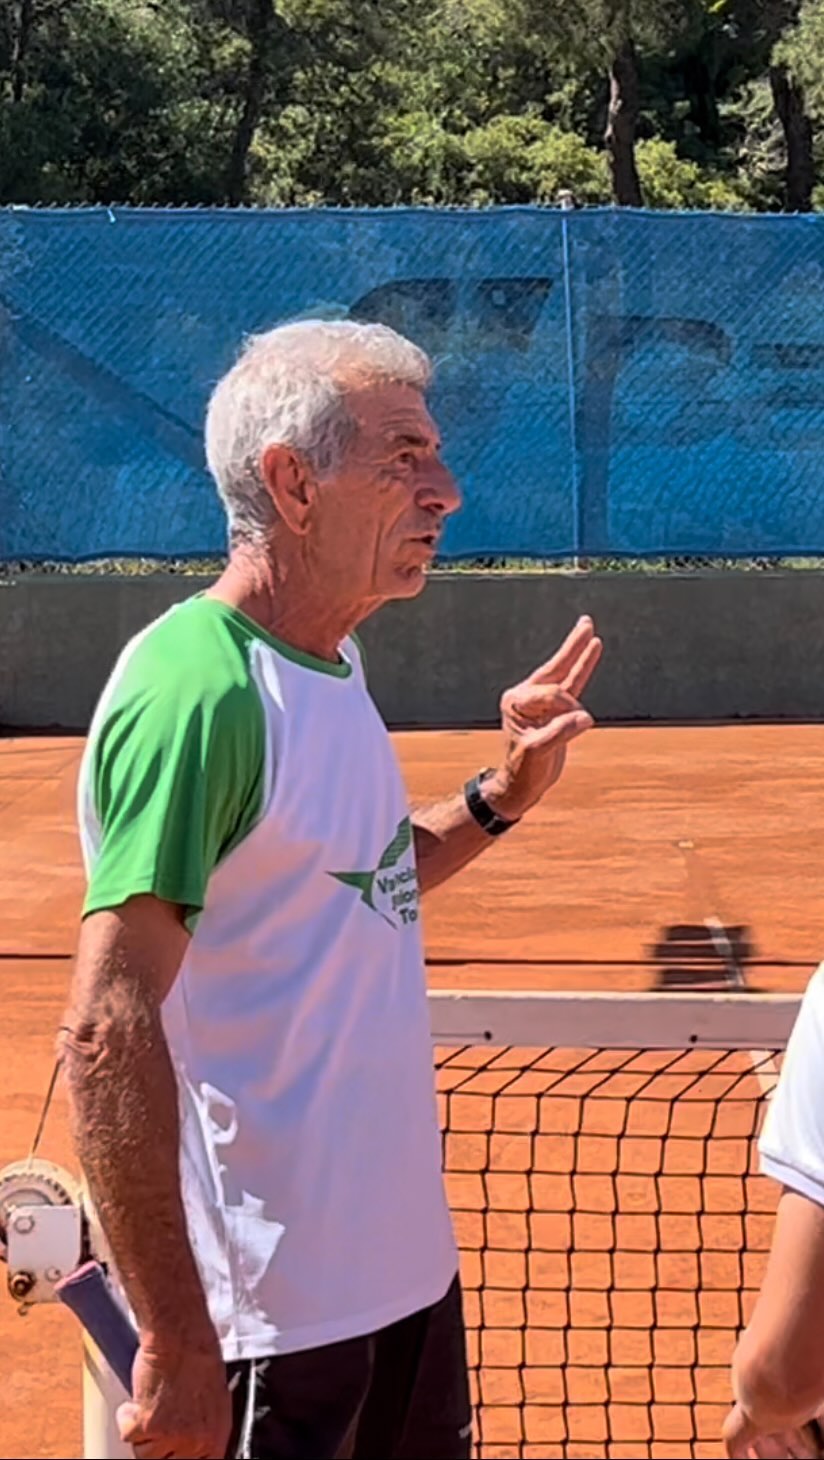 Charla de @marianopeinado1 🎓🎾 #disciplina #actitud #tenis #peinadotennisacademy #lospinos #javea